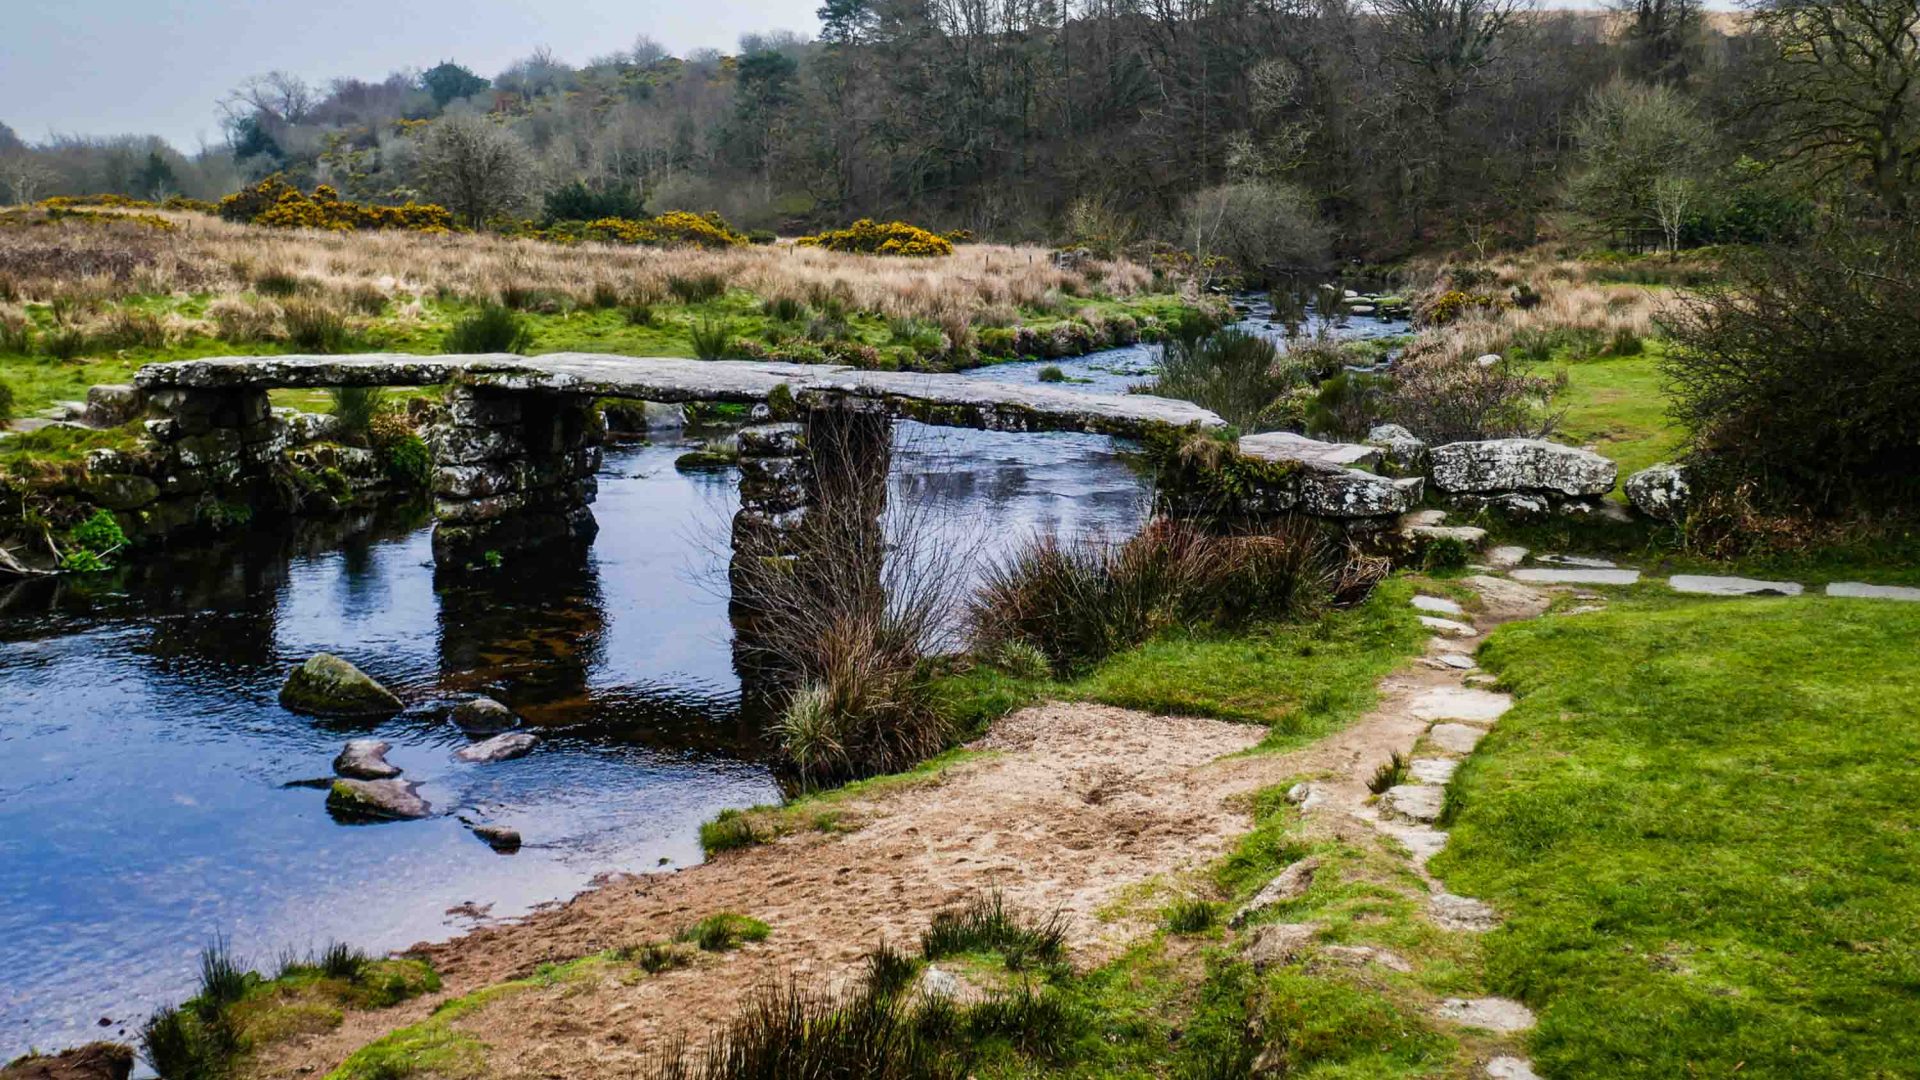 An ancient stone footbridge in Dartmoor.